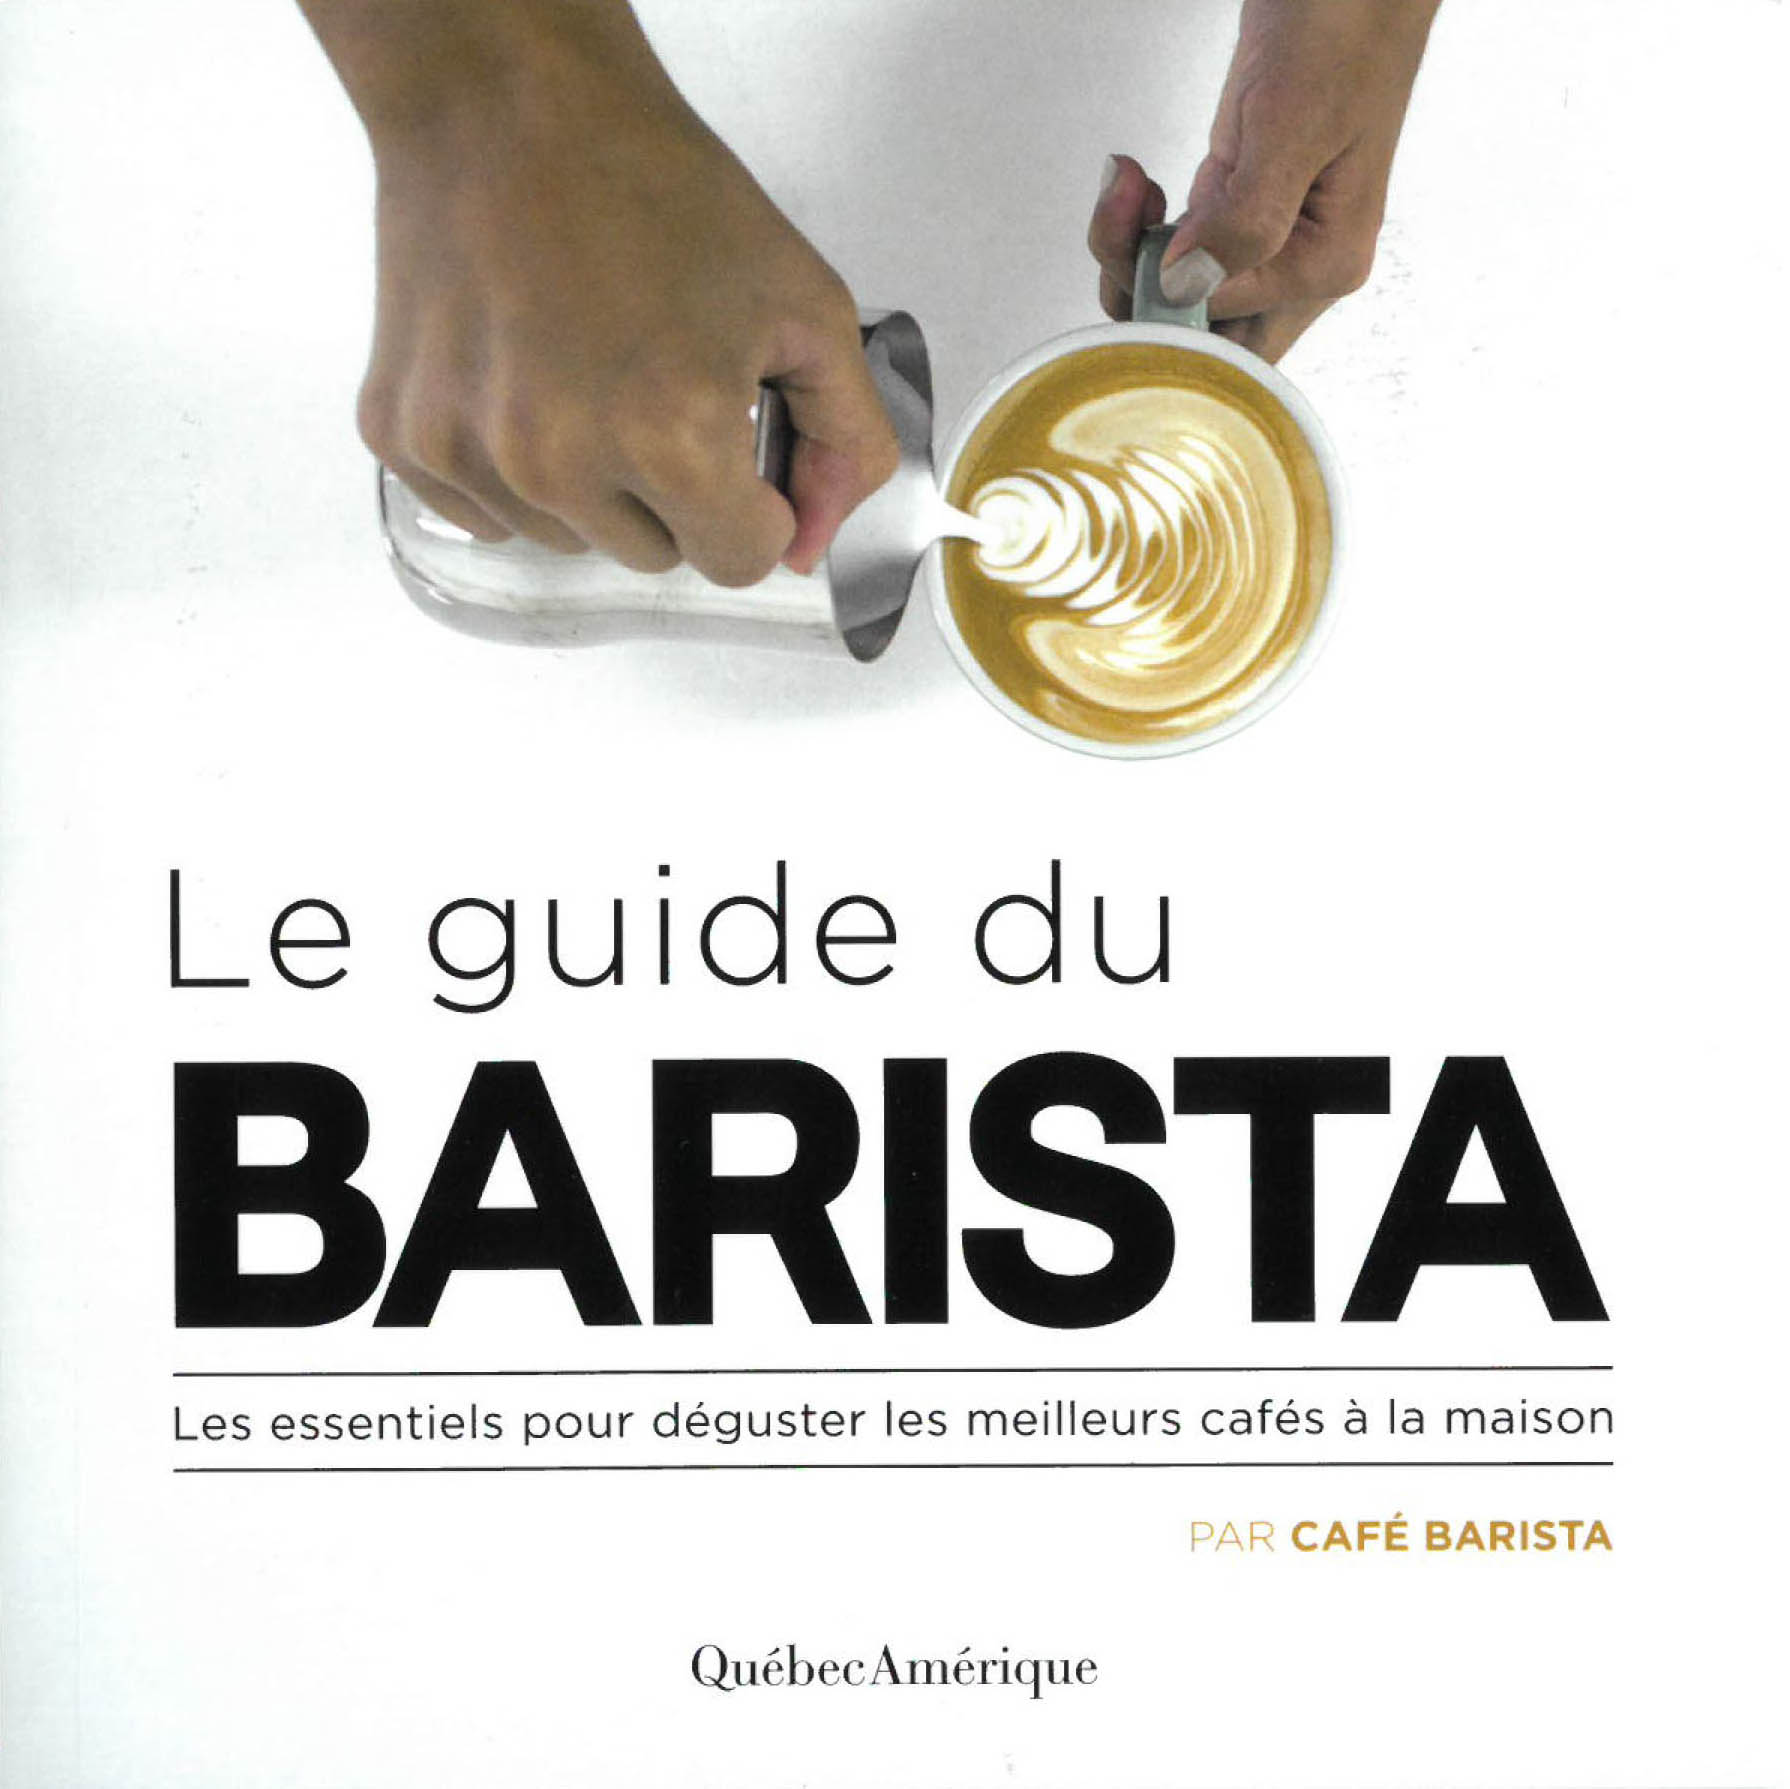 <h2><strong><em>Le guide du barista</em>, Café Barista, Québec Amérique</strong></h2>
<p>La promesse des auteurs: jamais plus de mauvais café! L’équipe de la maison de torréfaction Café Barista nous fournit les essentiels de la confection et de la dégustation de café à la maison, de l’extraction de l’espresso à l’art de réaliser des motifs avec la mousse de lait (<em>latte art)</em>.</p>
